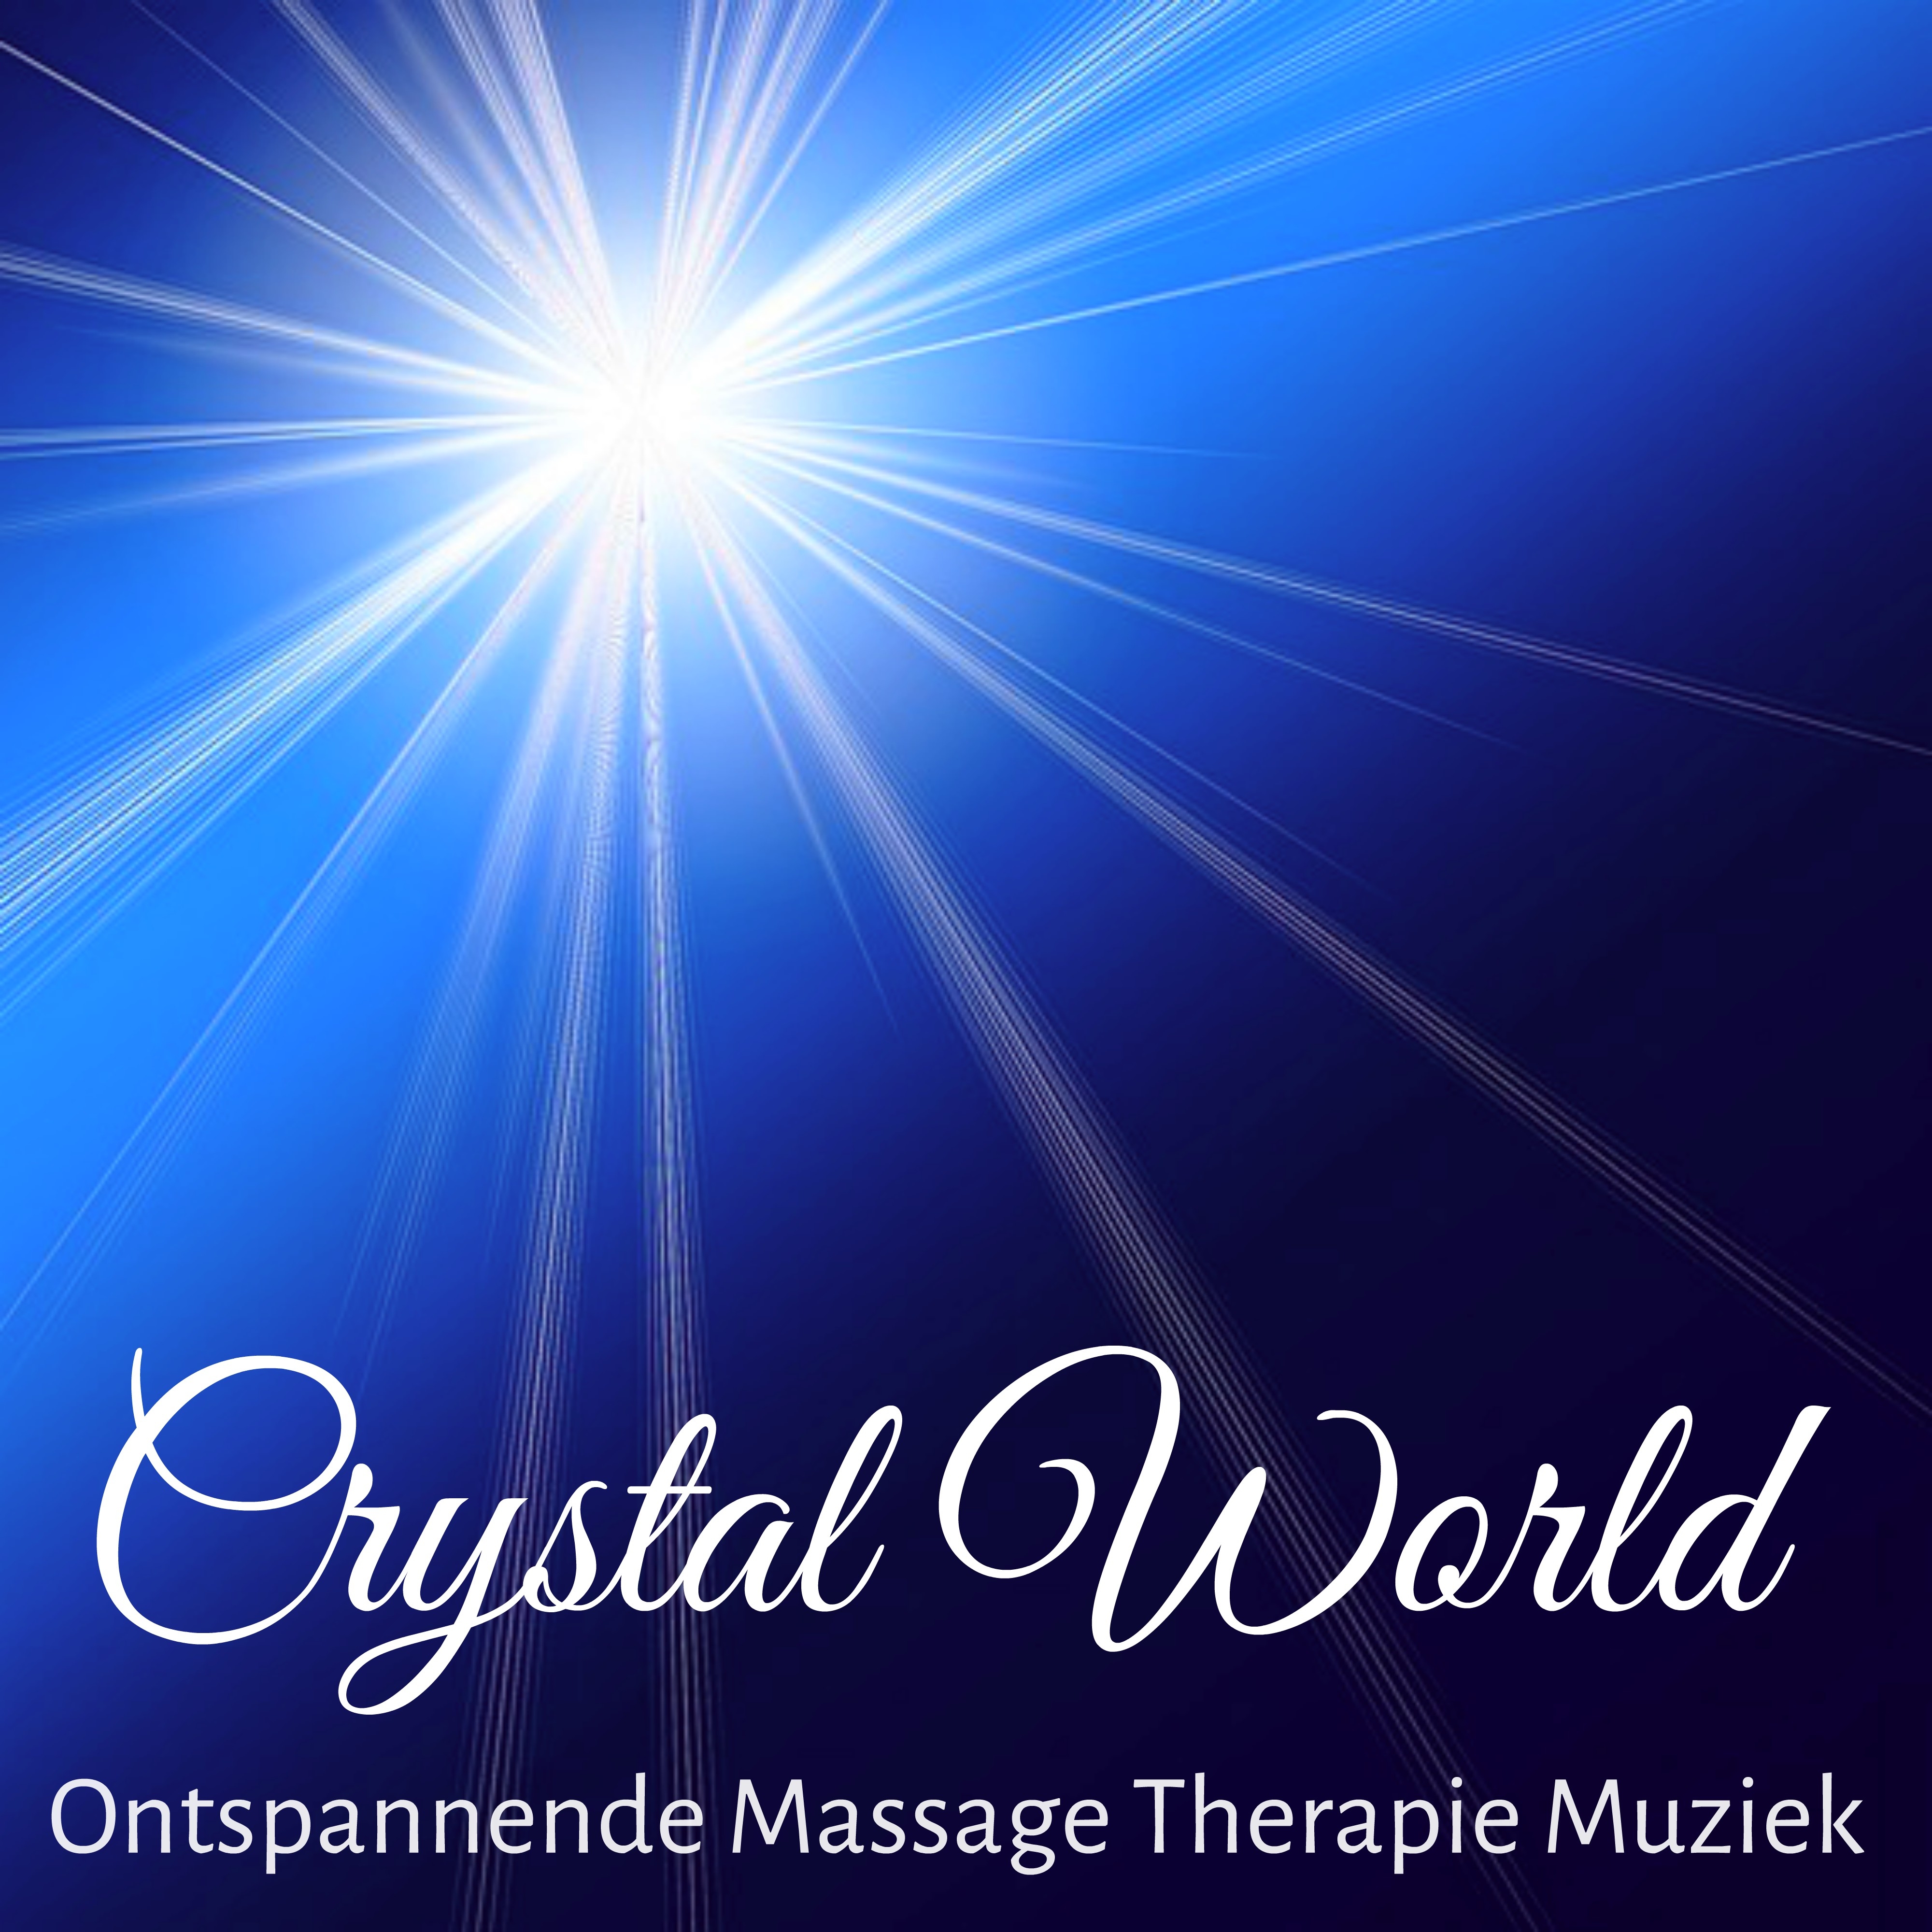 Crystal World - Meditatie Ontspannende Massage Therapie Muziek met New Age Instrumentale Zachte Geluiden